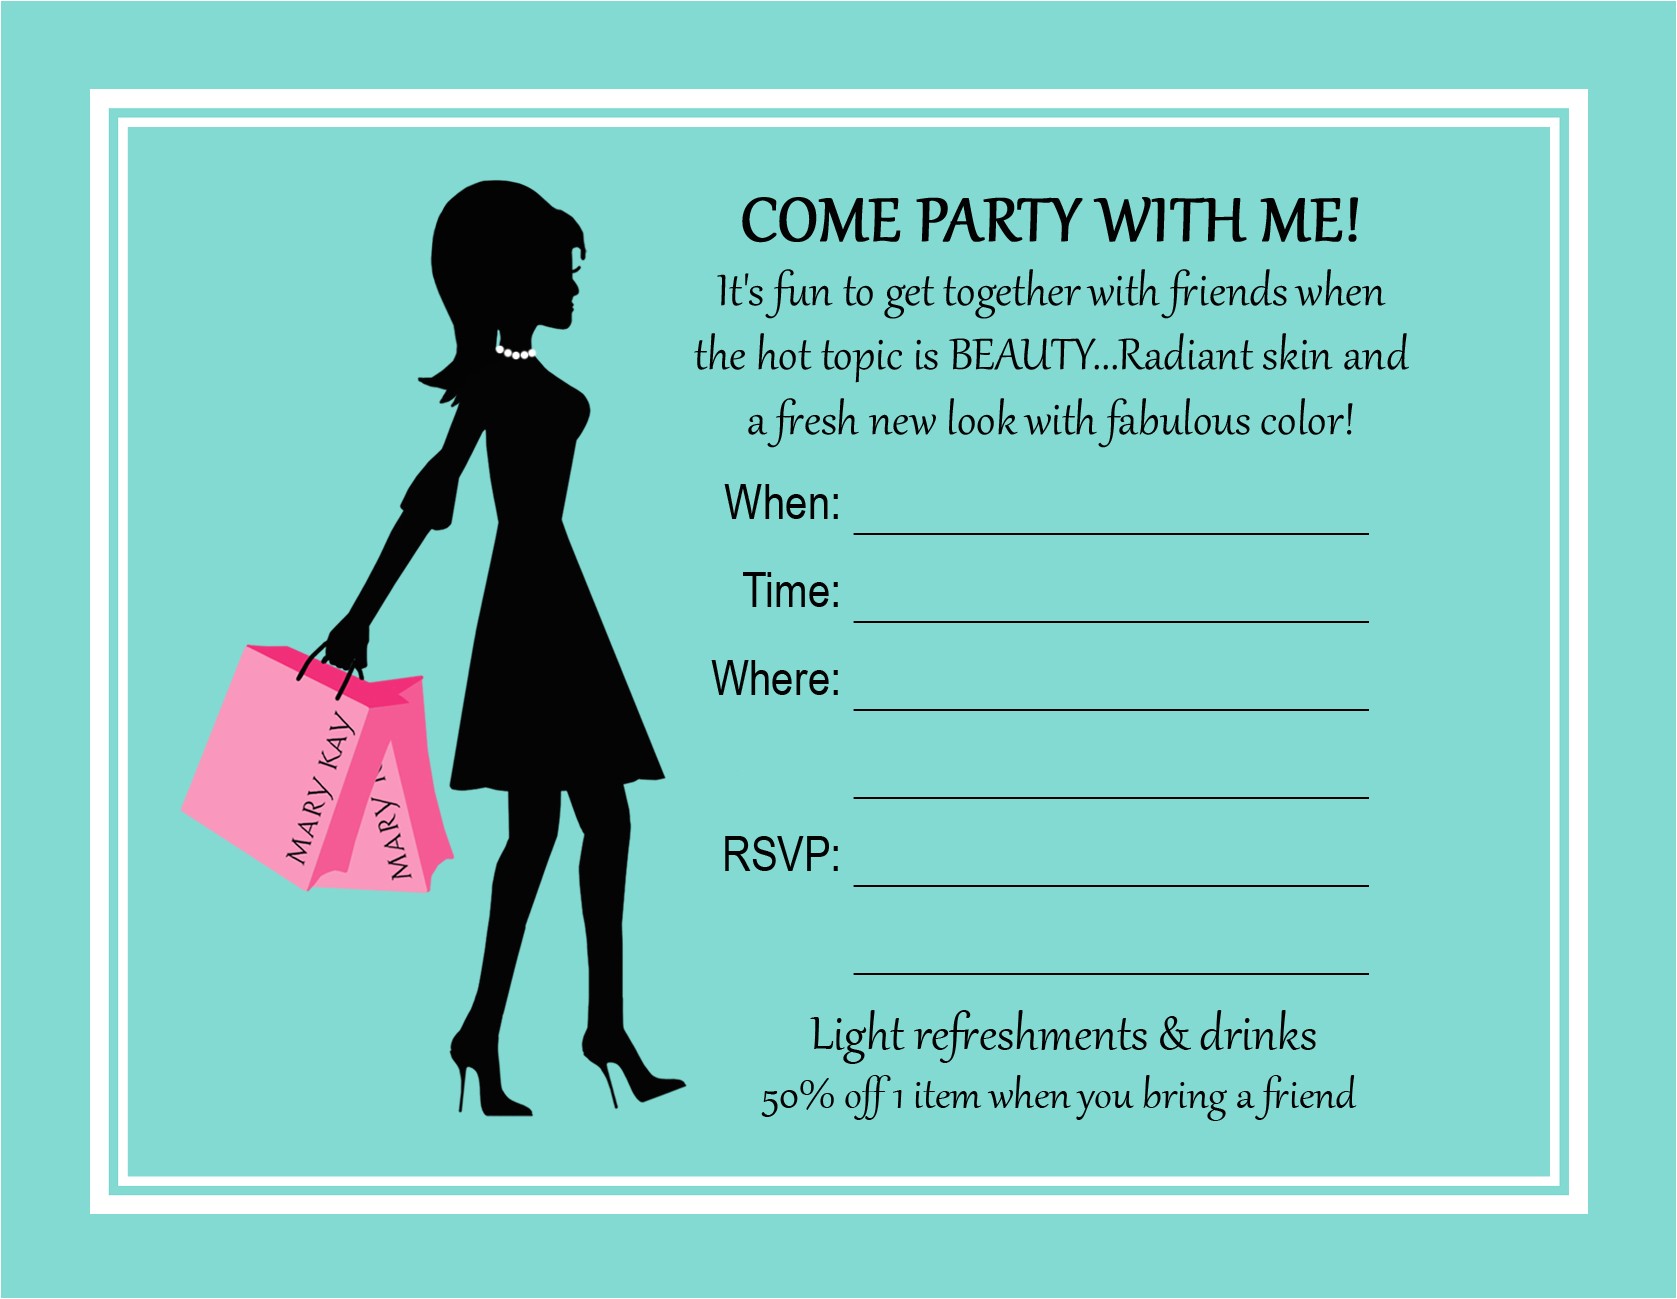 mary kay party invitation wording